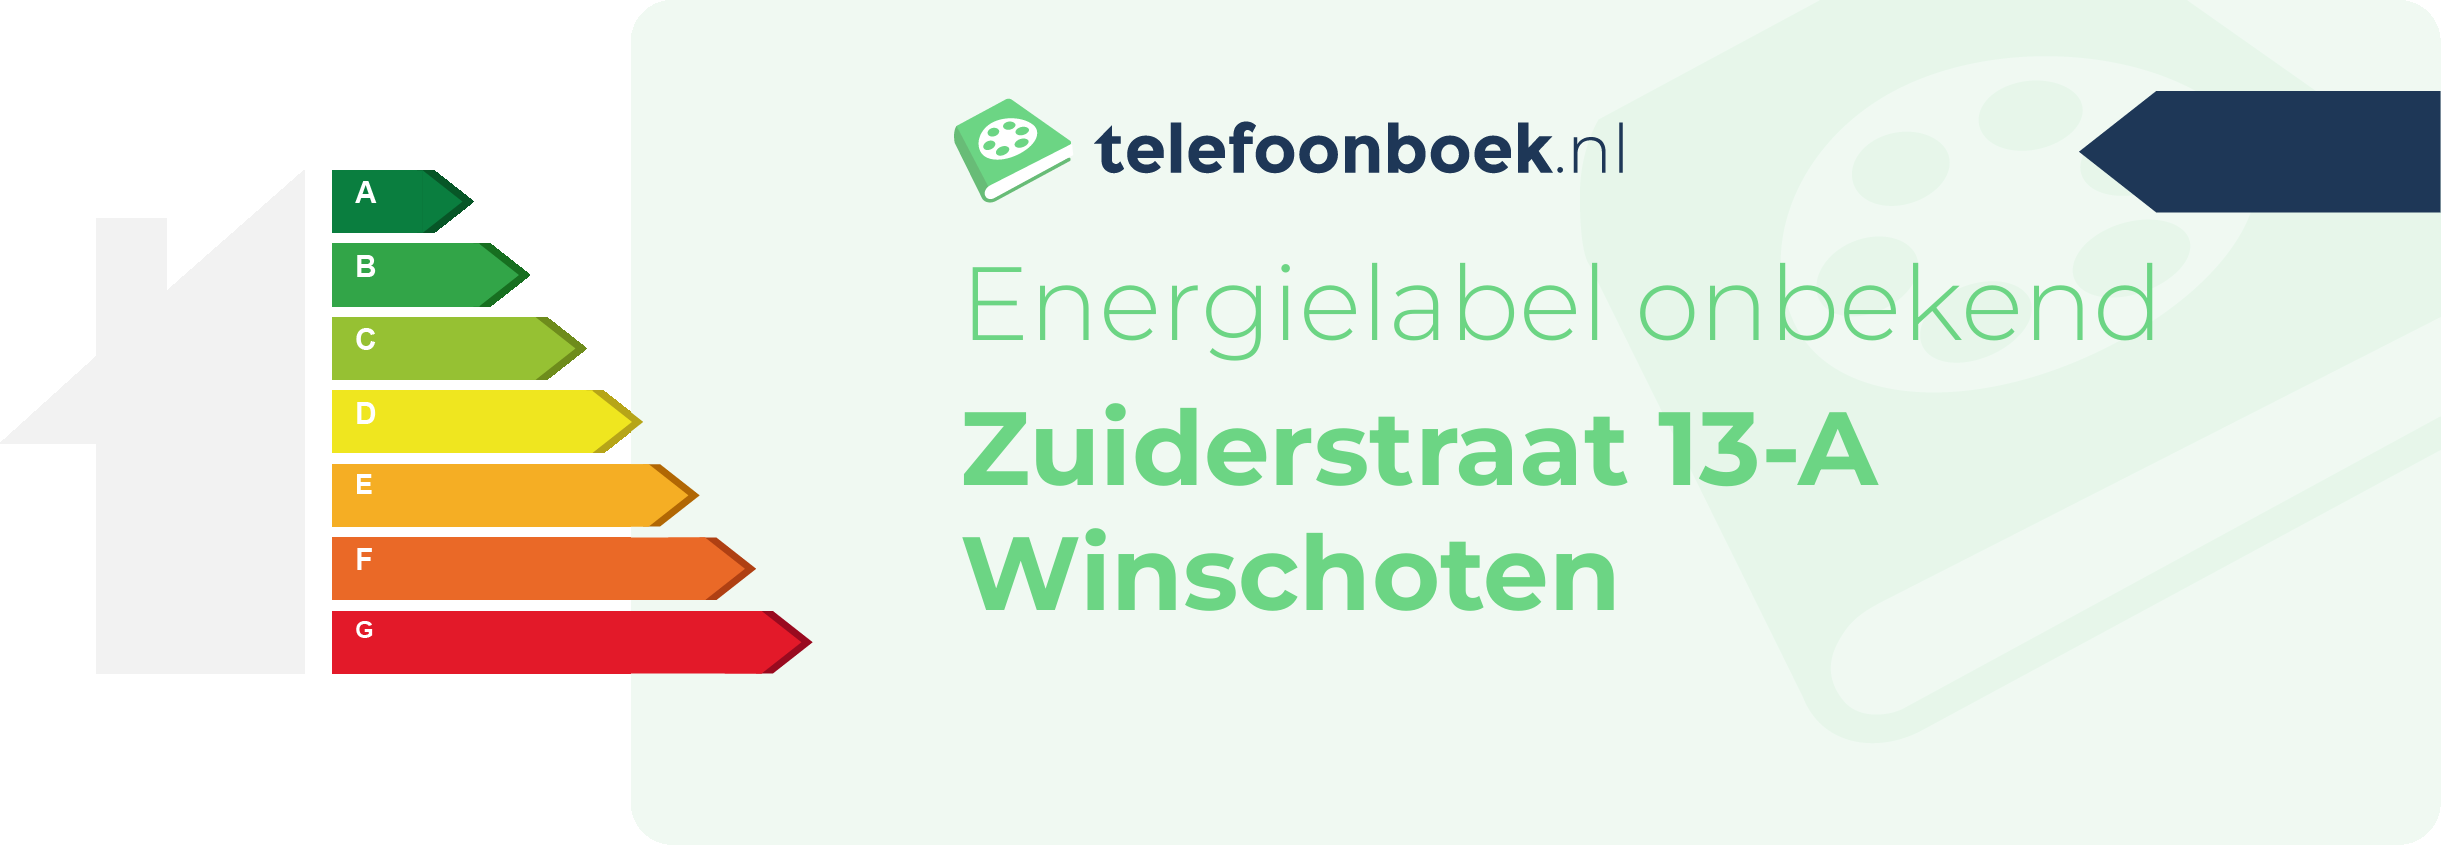 Energielabel Zuiderstraat 13-A Winschoten